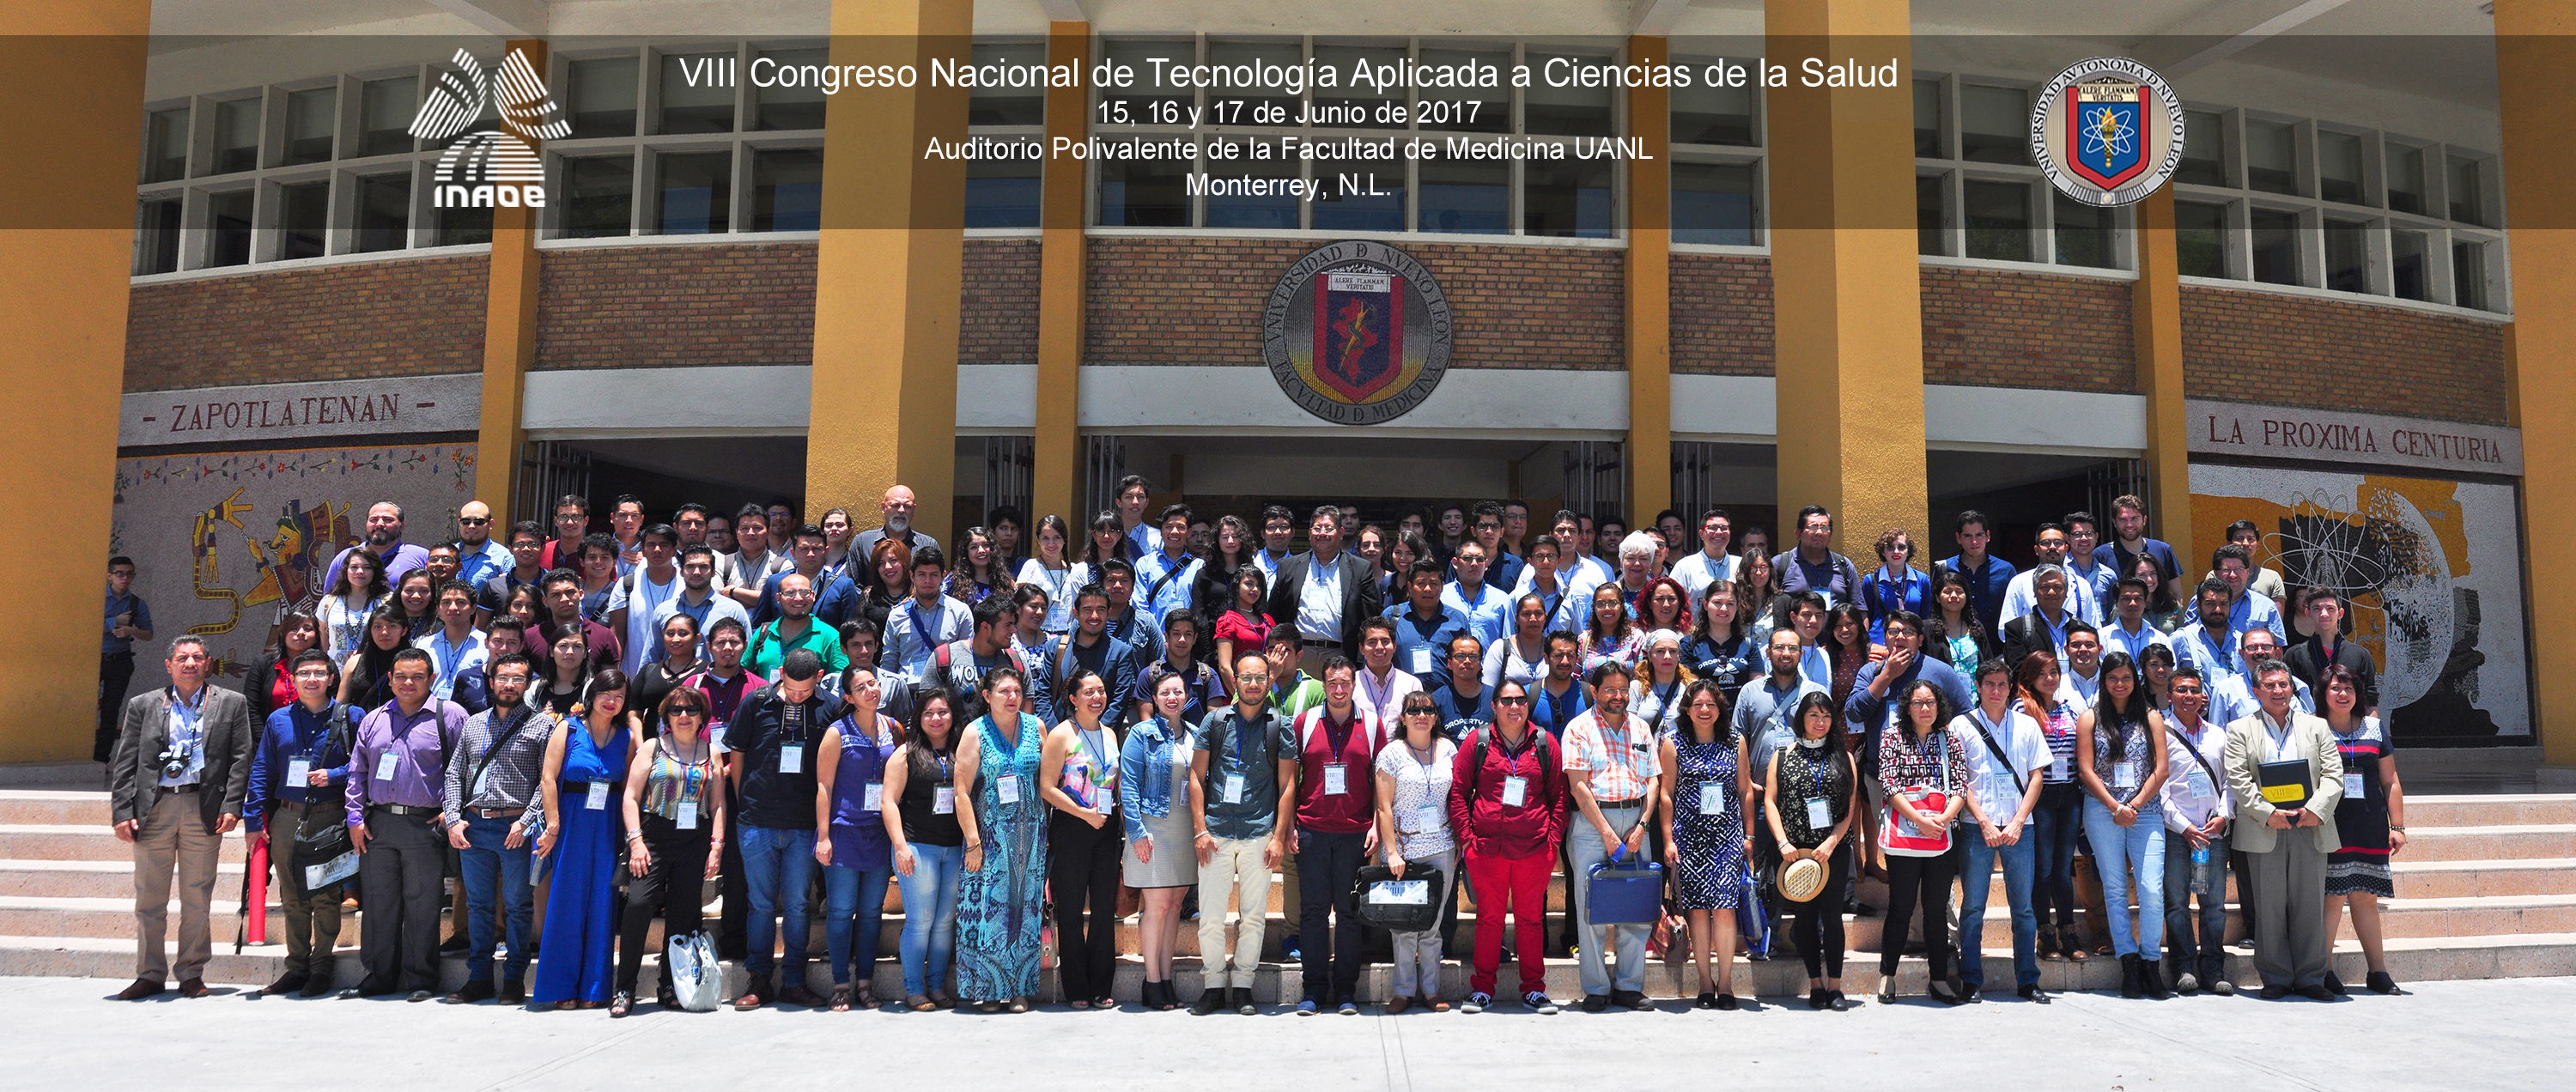 VII Congreso Nacional de Tecnología Aplicada